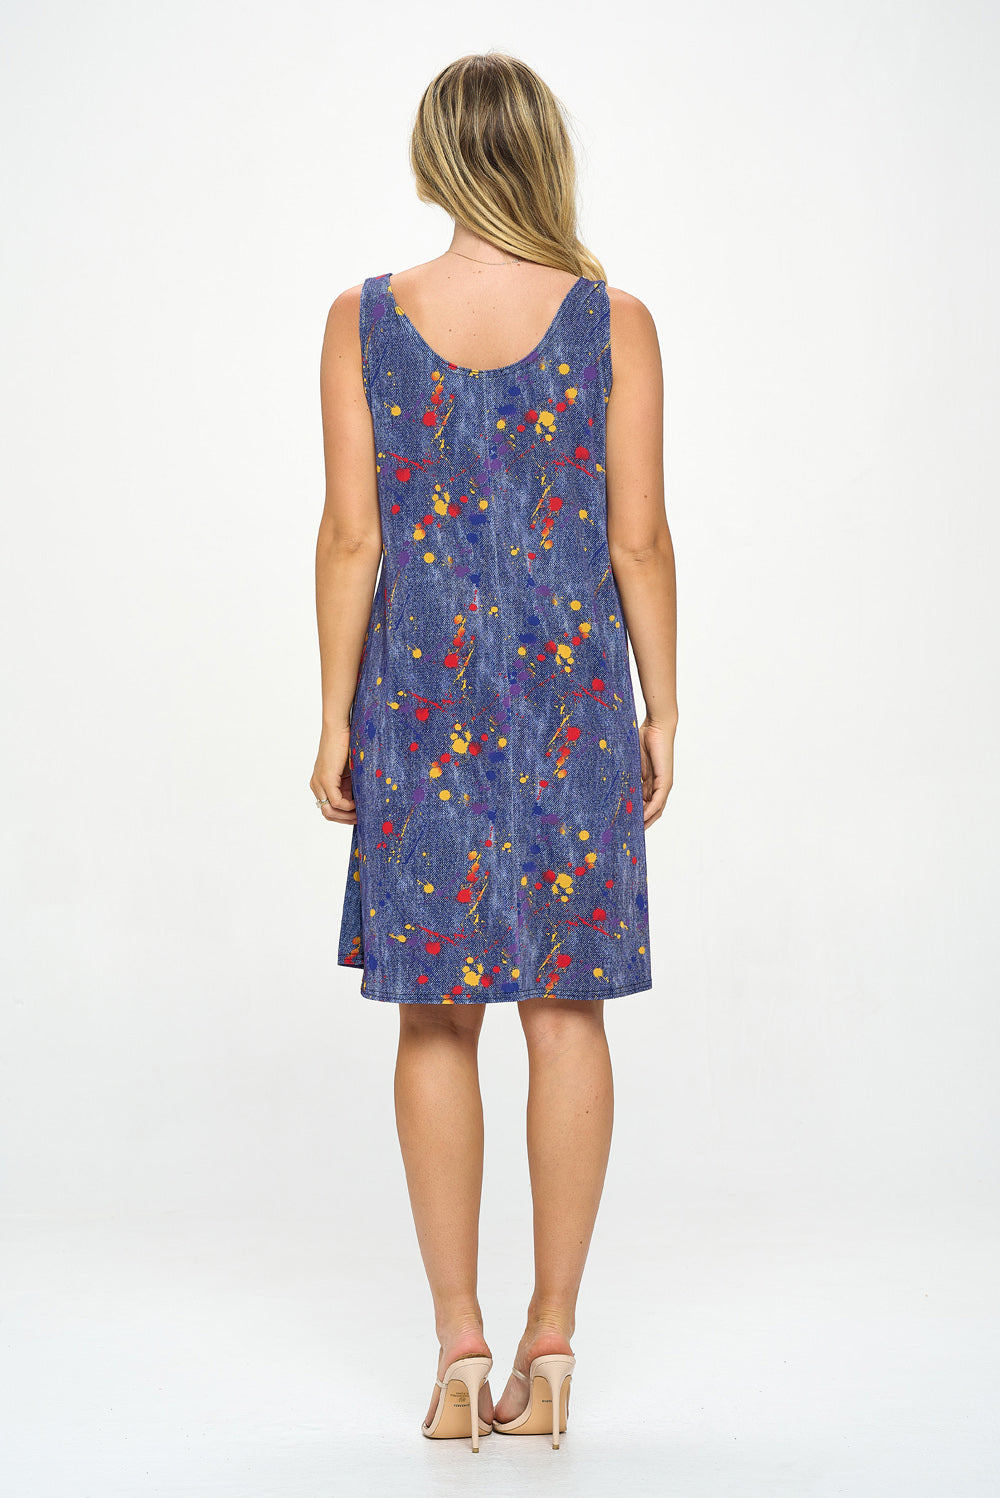 Print Missy Tank Dress-7003BN-TRD1-D006